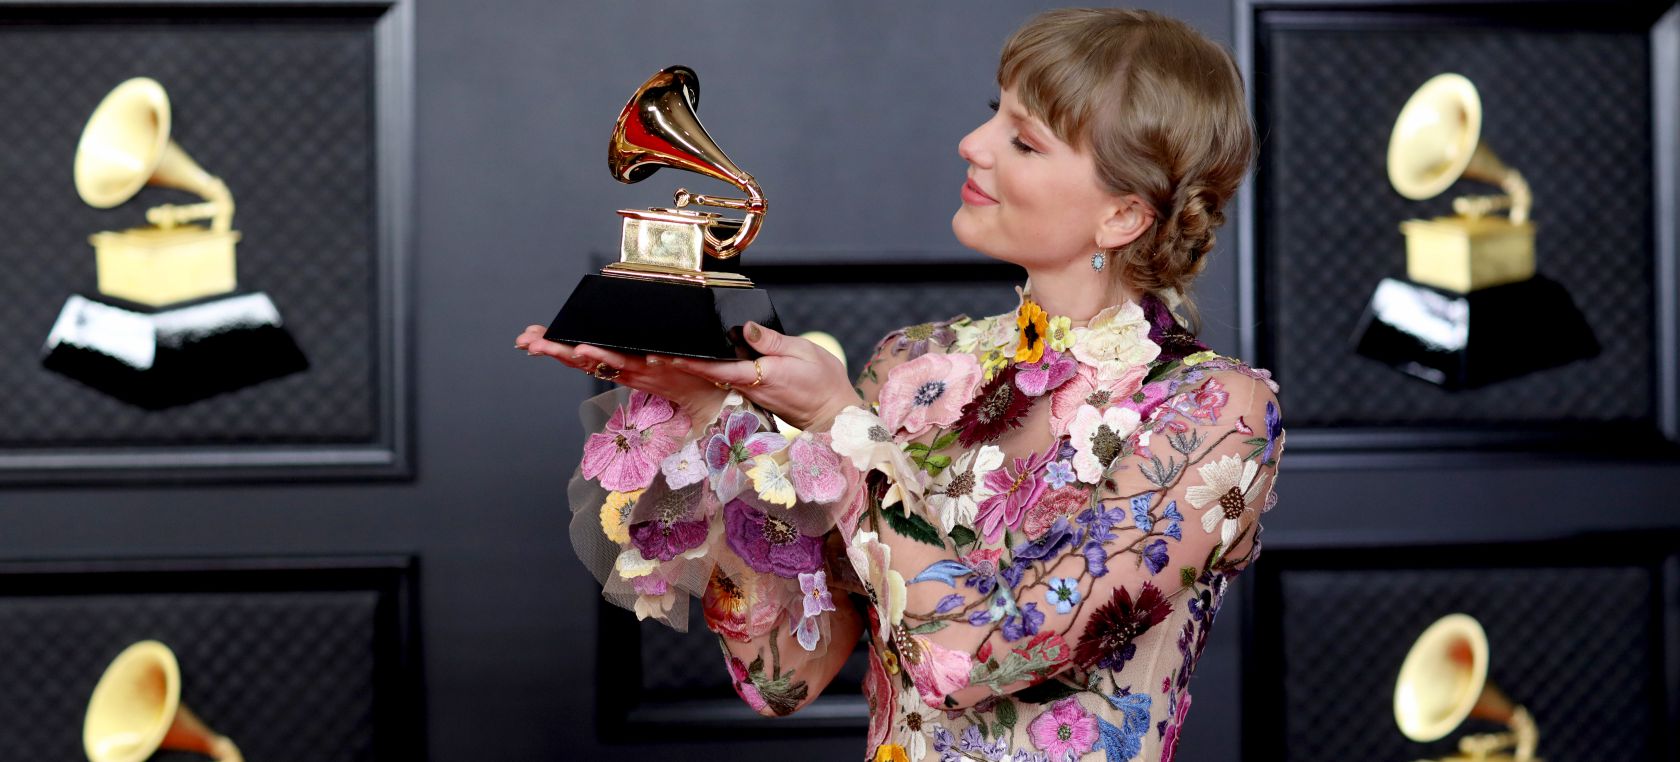 ¿Quién organiza los Premios Grammy, dónde se hacen y cómo son las votaciones? Todo sobre estos galardones